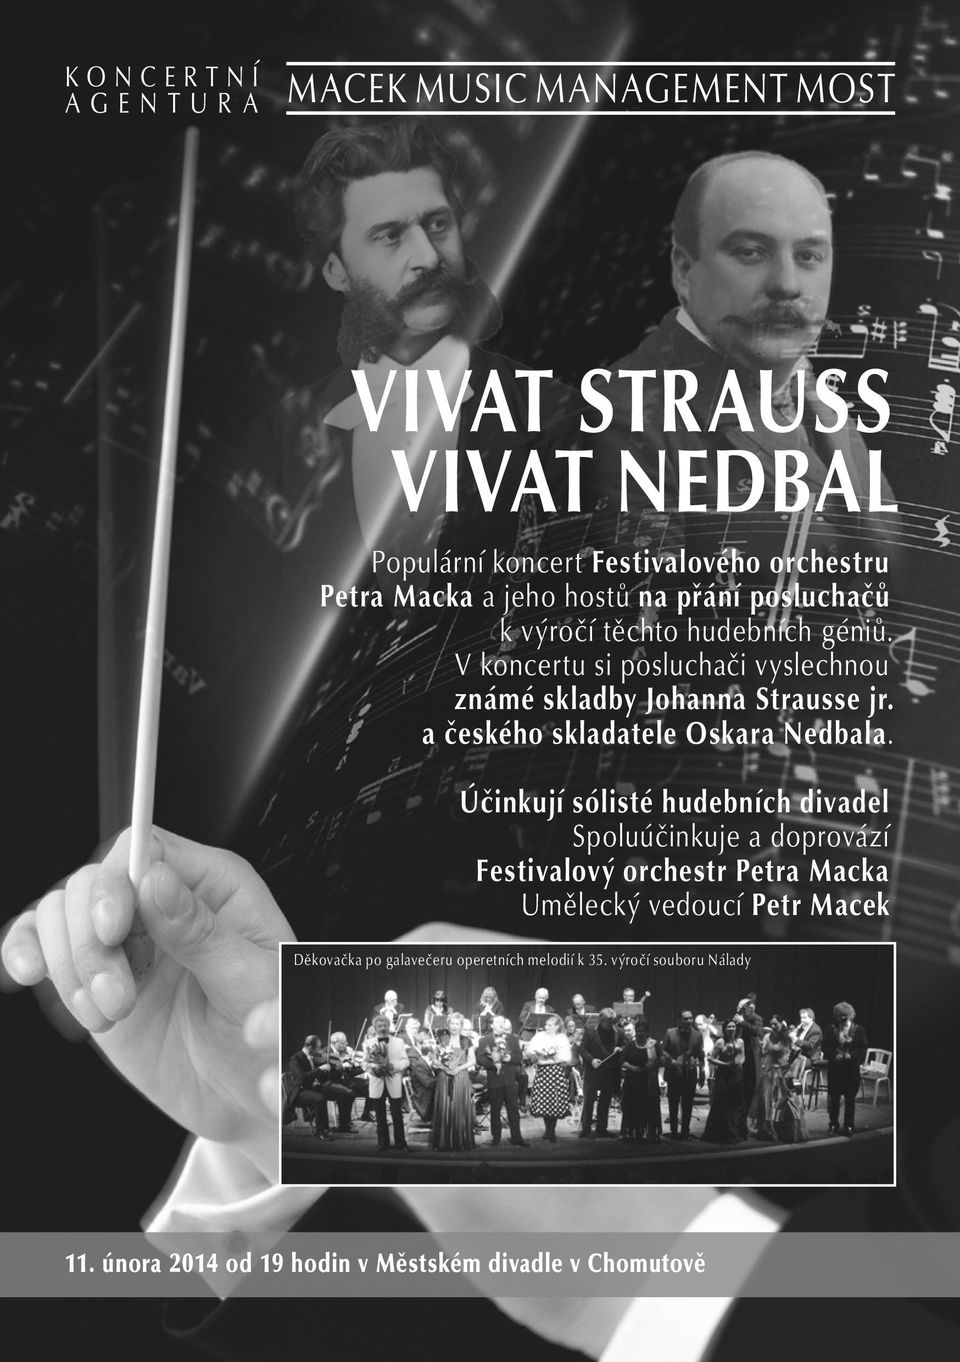 V koncertu si posluchači vyslechnou známé skladby Johanna Strausse jr. a českého skladatele Oskara Nedbala.